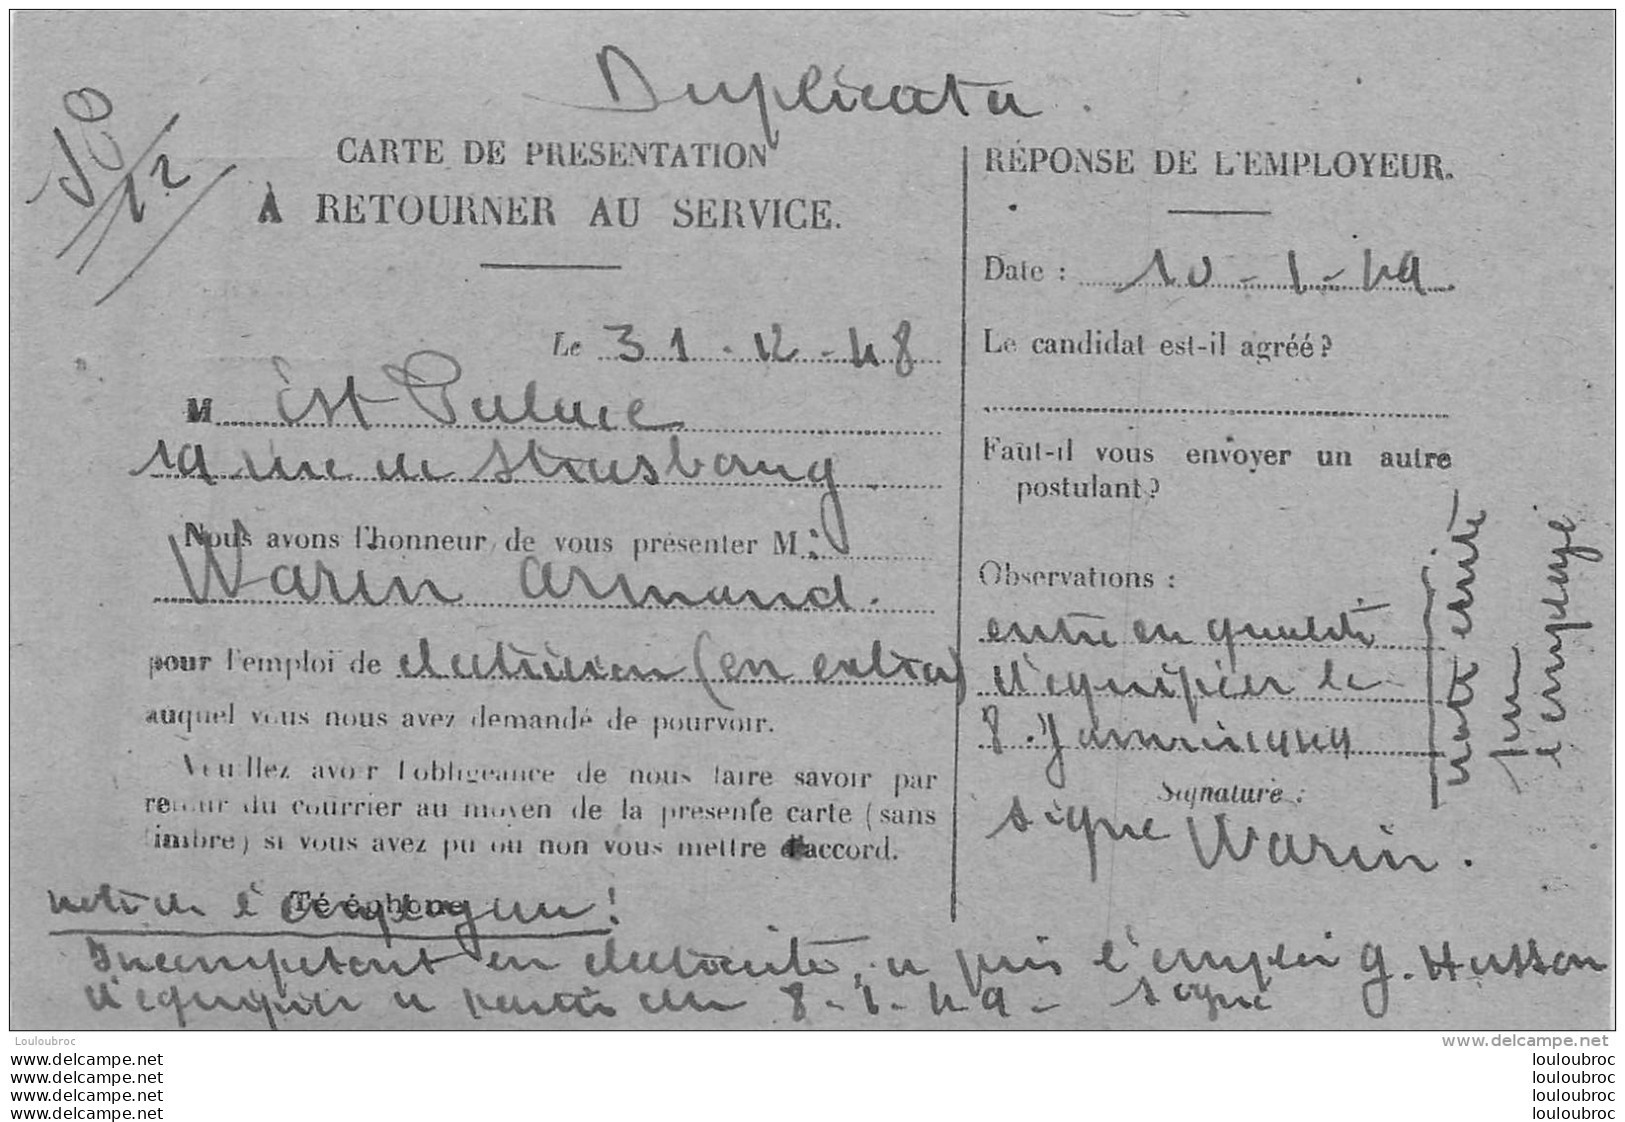 OFFICE REGIONAL DU TRAVAIL DE PARIS CARTE REPONSE 1948 VOIR LES DEUX SCANS - Documents Historiques